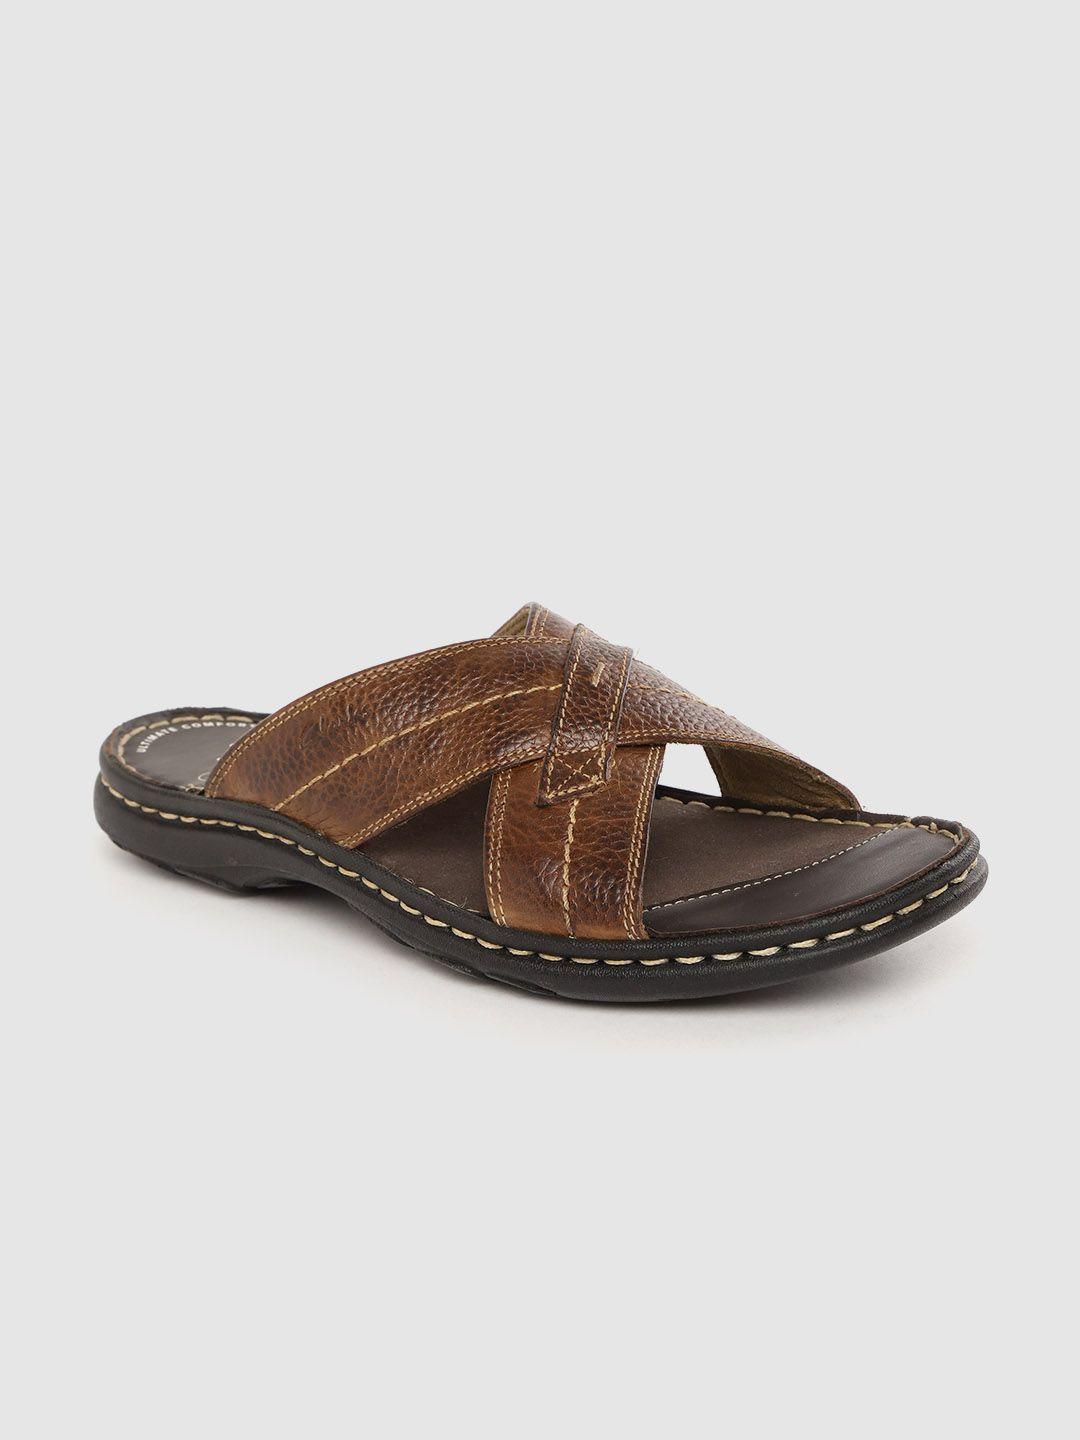 clarks men brown leather comfort sandals